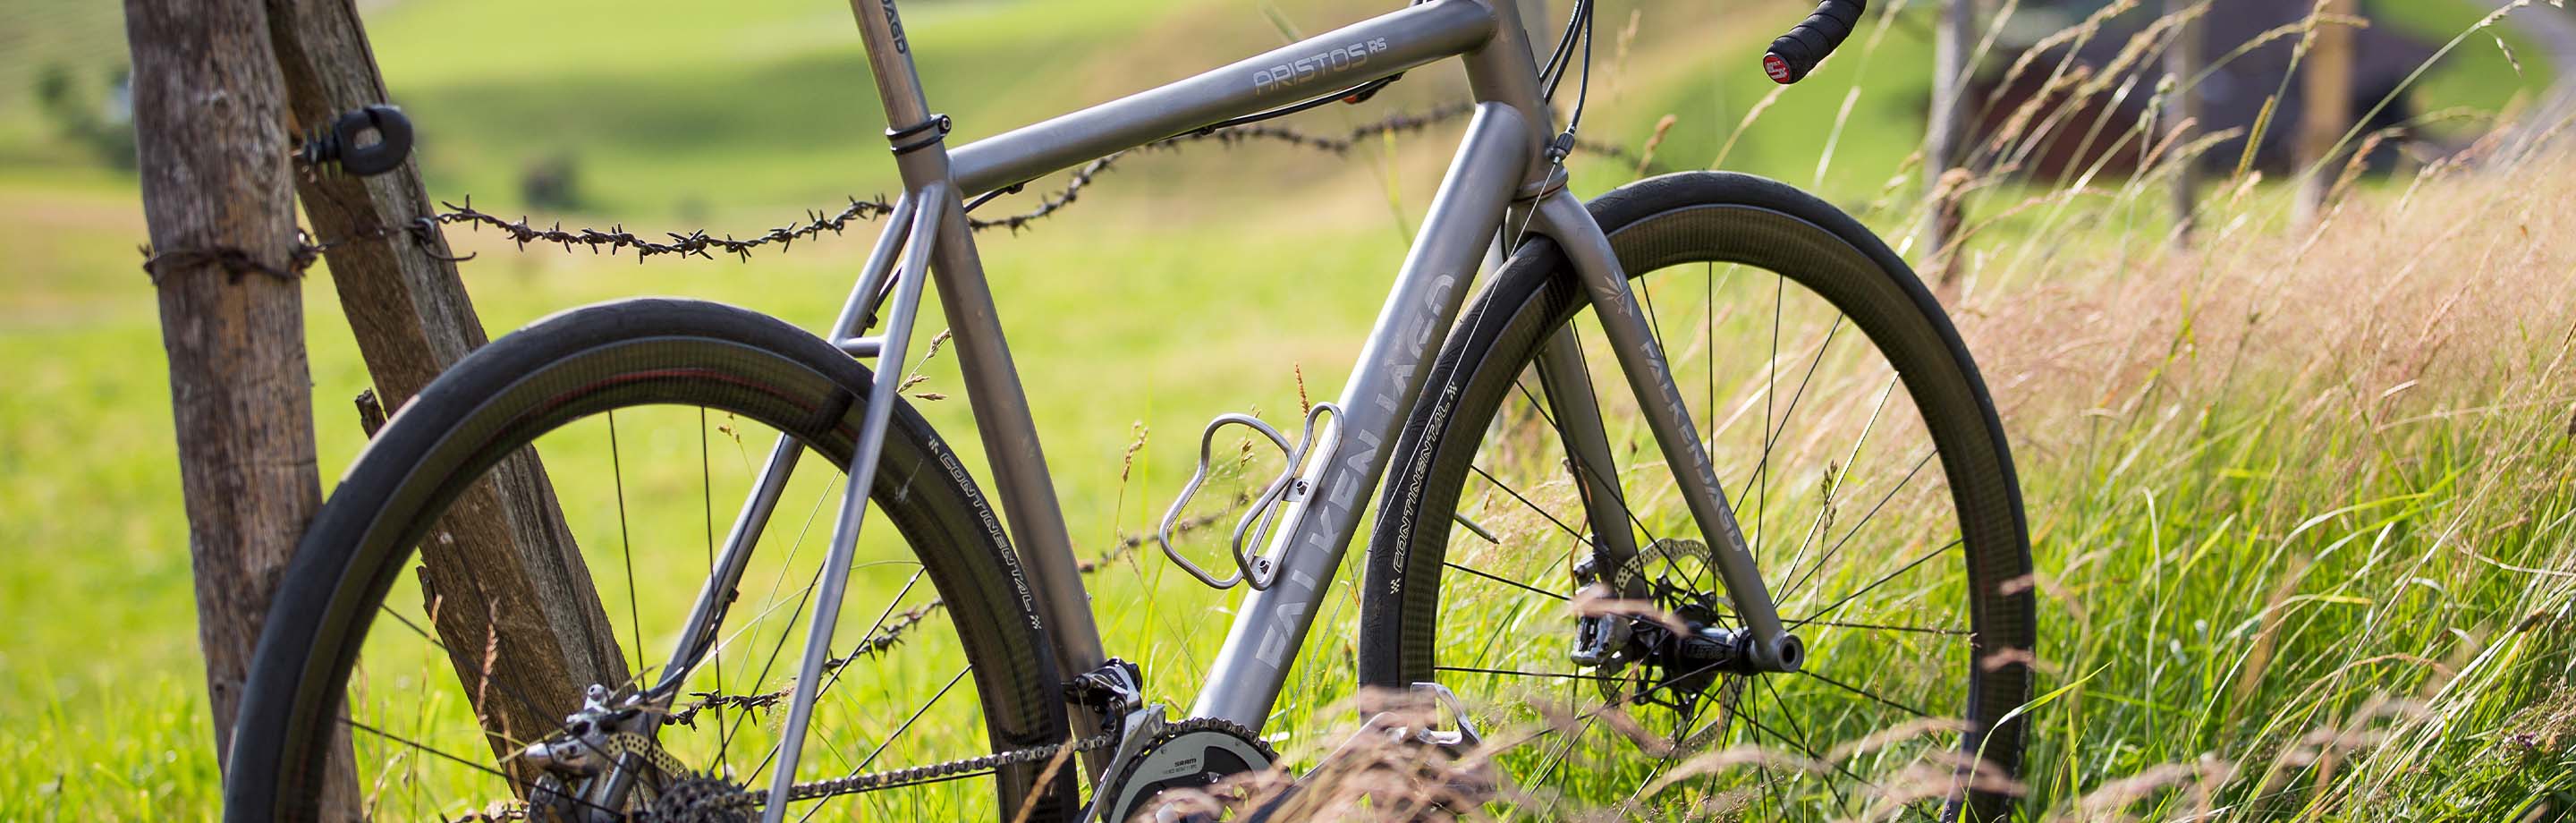 Falkenjagd Bikes - puristische titanium fietsen voor de eeuwigheid